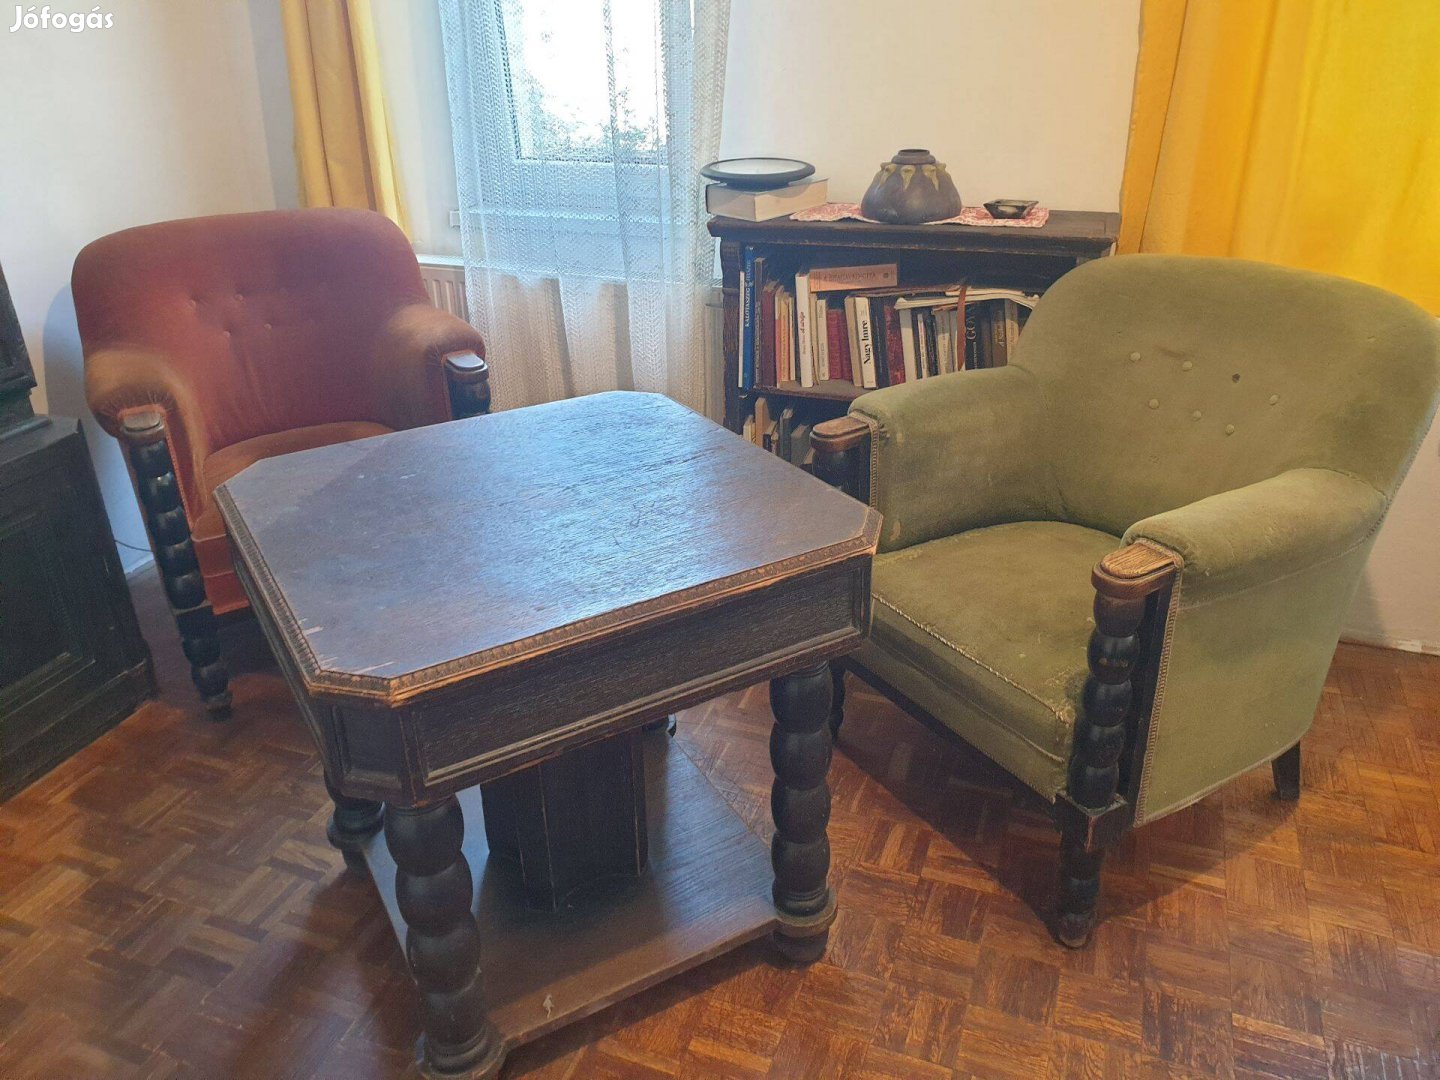 Eladó antik (Art deco) asztal két fotellel. Lakberendezők figyelmébe